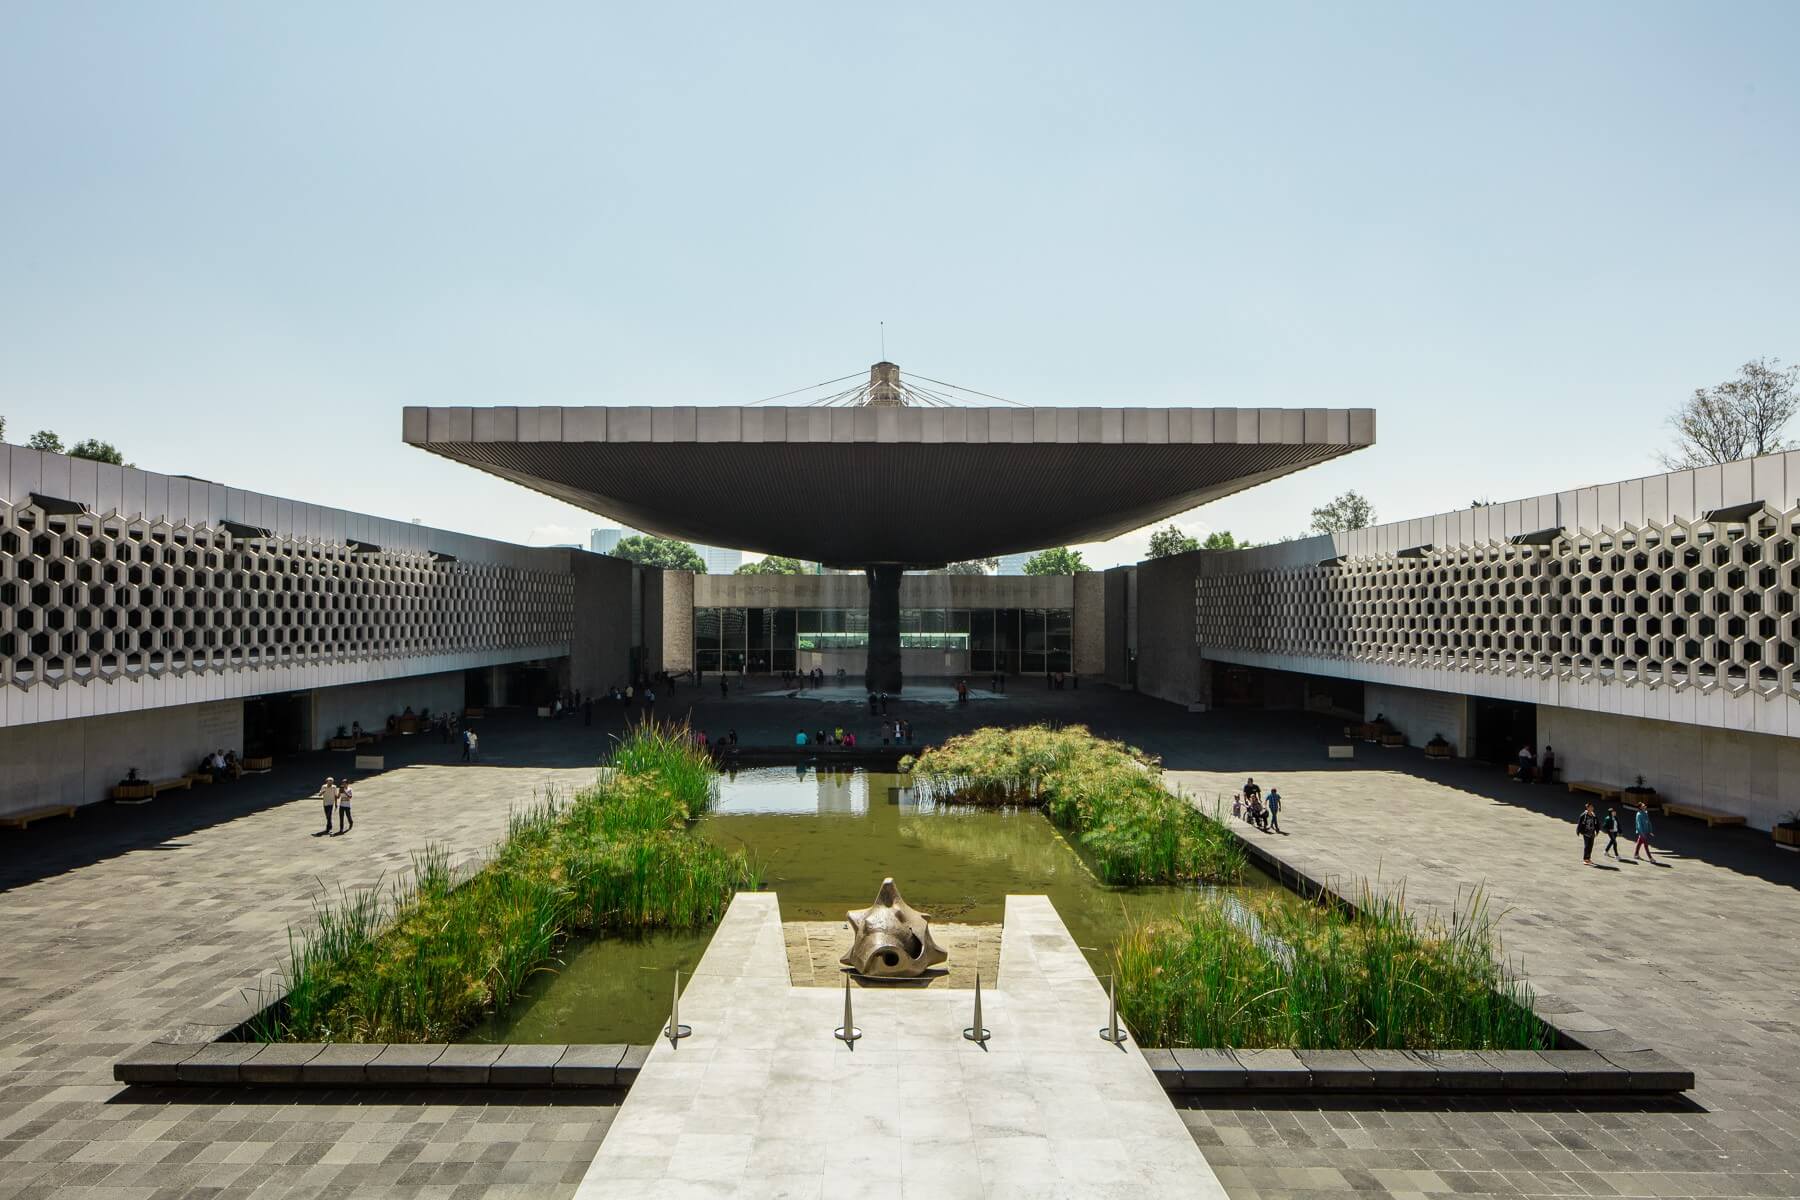 Museo Nacional de Antropologia: Mexico City